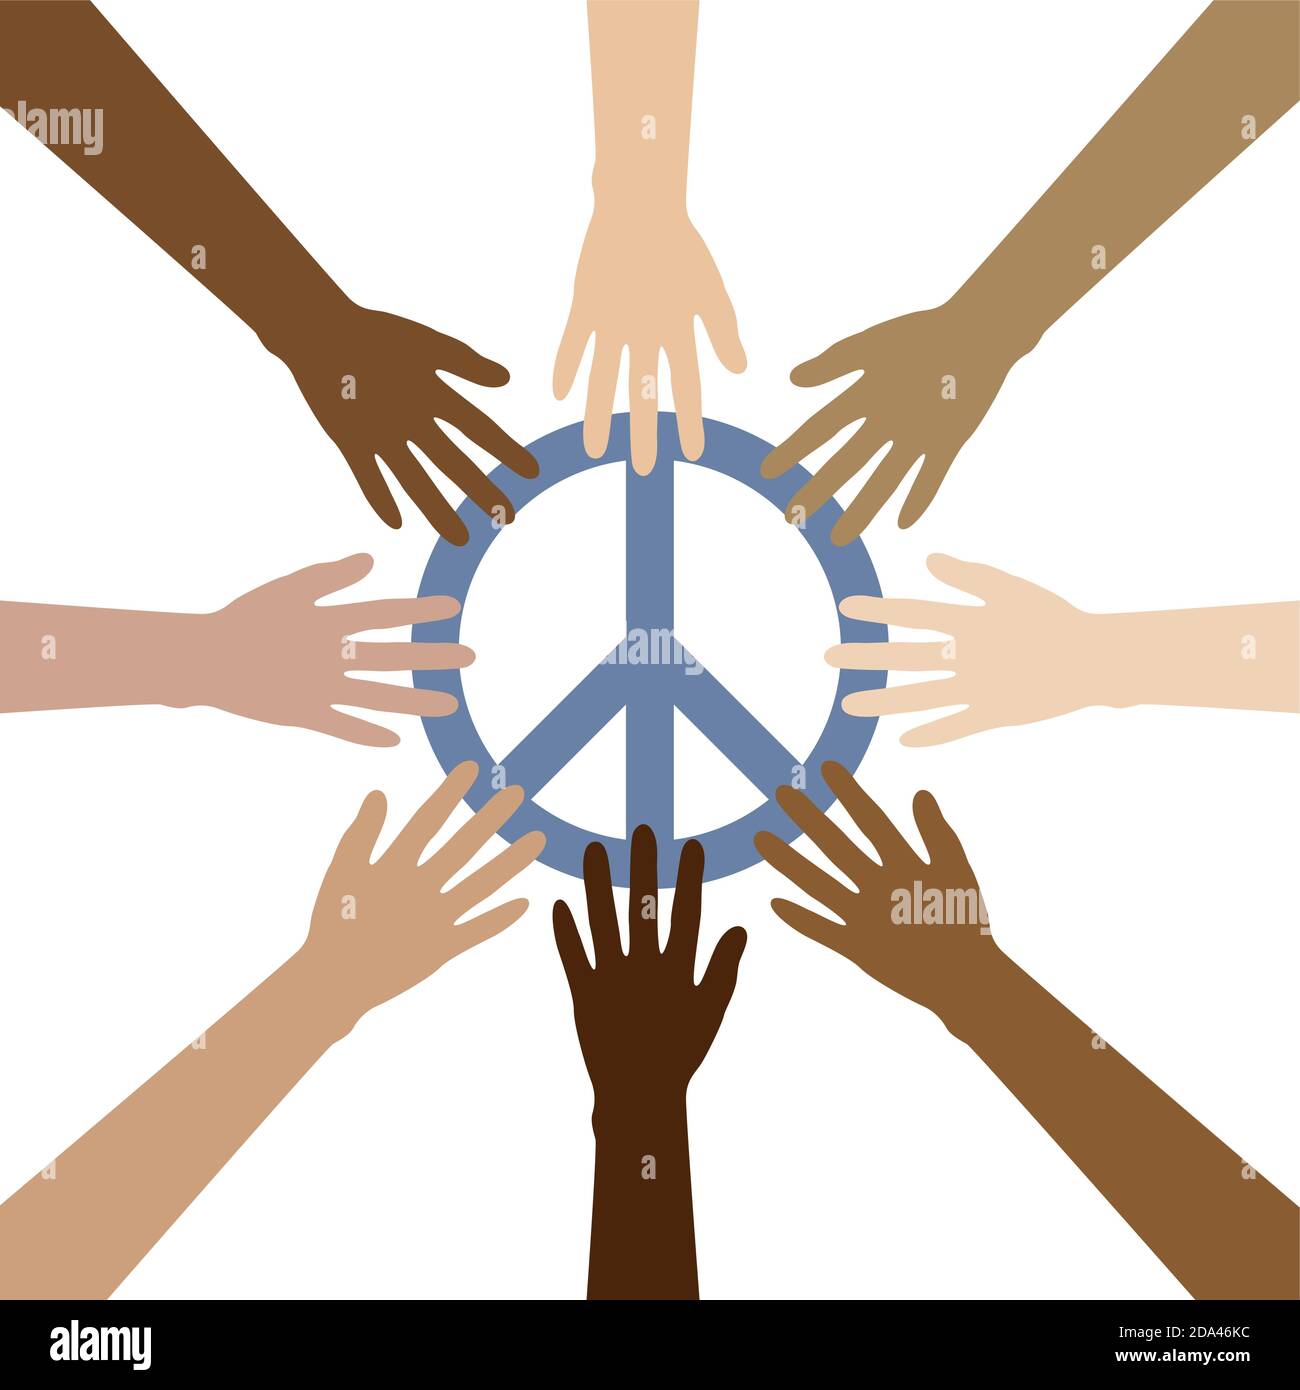 Gruppe von menschlichen Händen mit verschiedenen Hautfarben bauen ein Kreis um Friedenssymbol Vektorgrafik EPS10 Stock Vektor